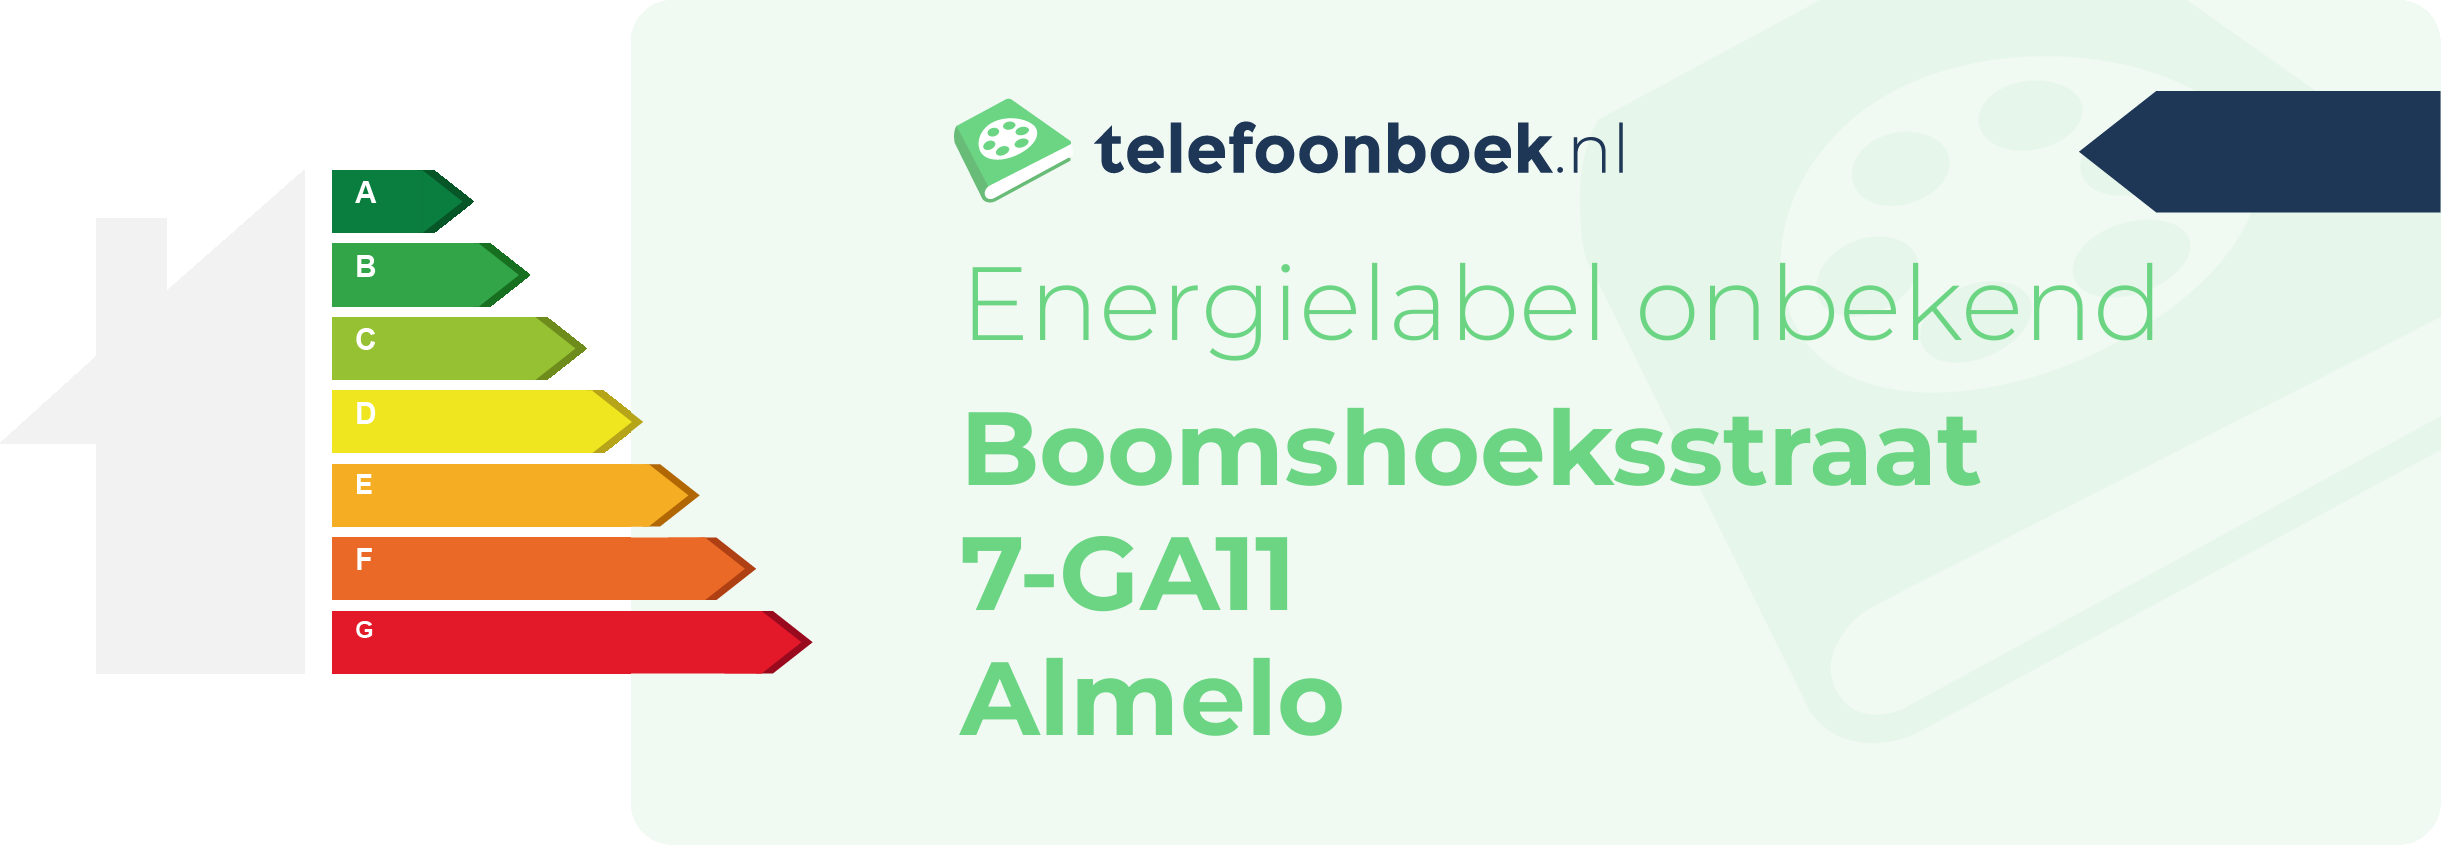 Energielabel Boomshoeksstraat 7-GA11 Almelo